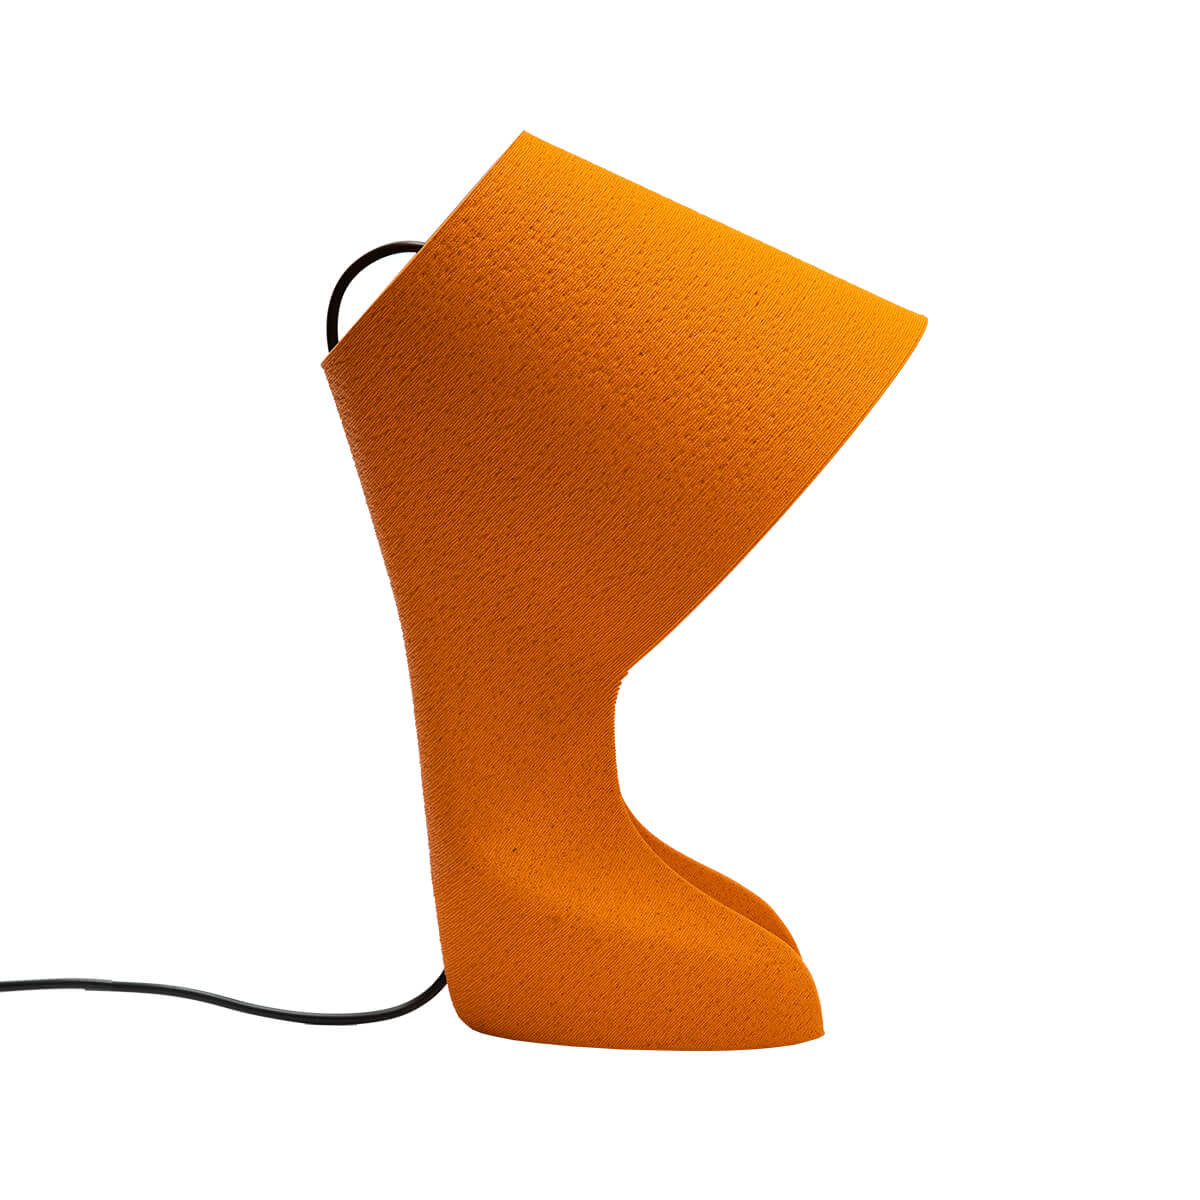 Krill Design Ohmie Orange Lamp